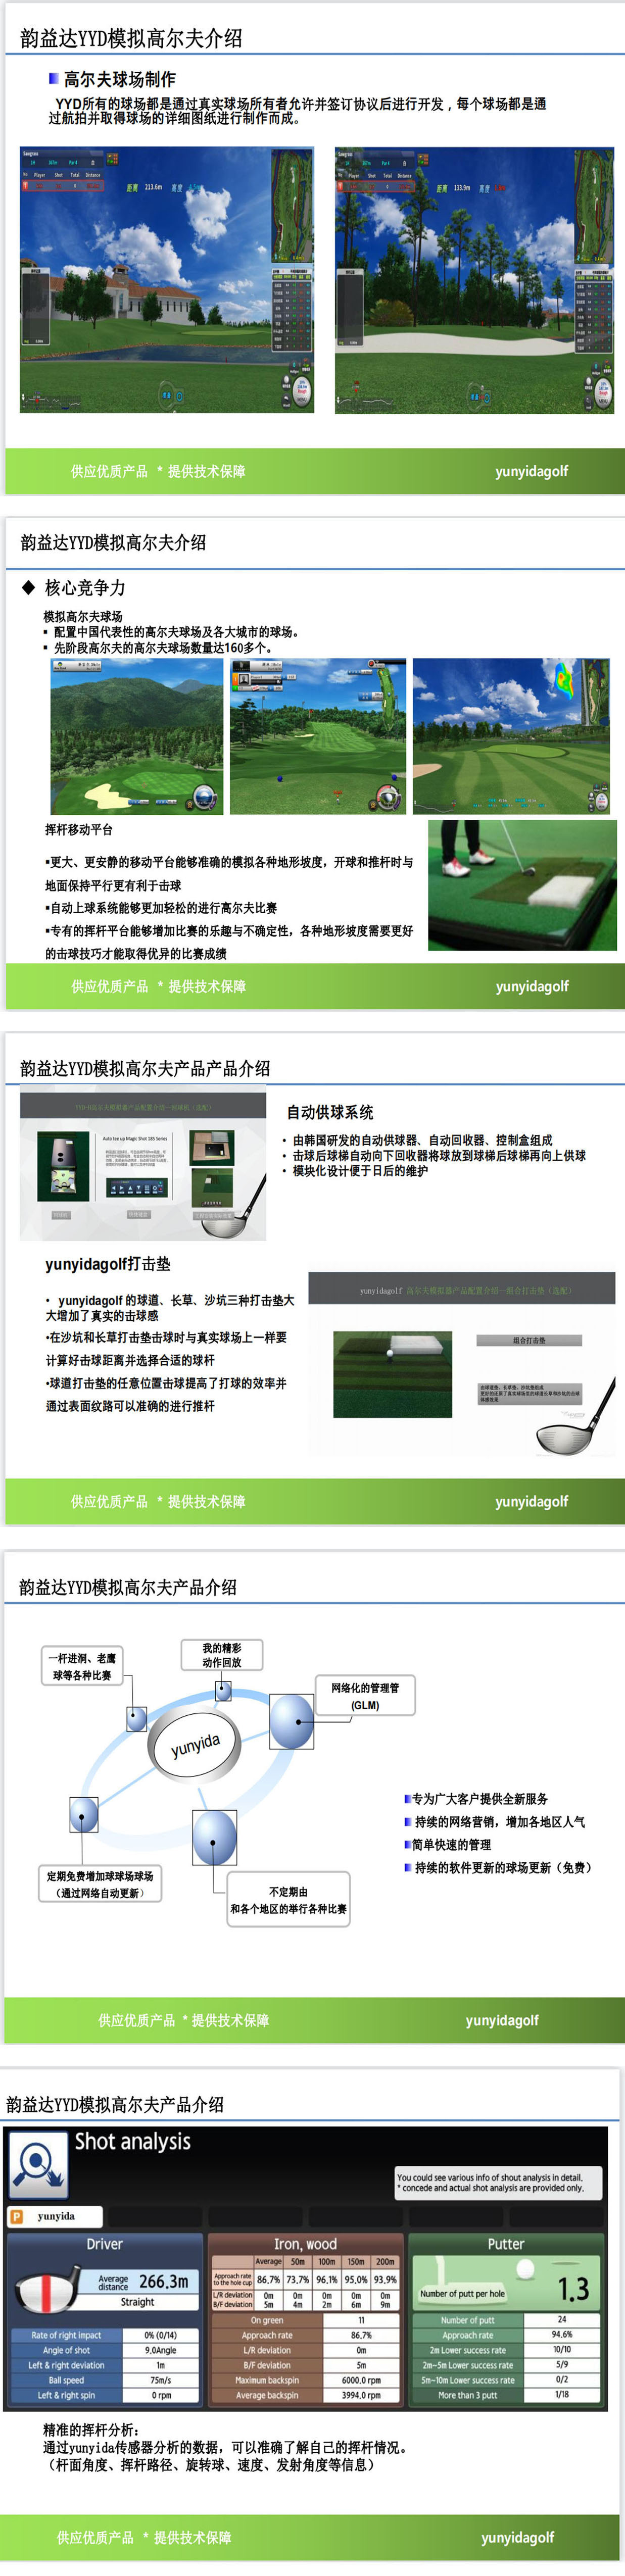 高尔夫模拟器教学系统 3.jpg